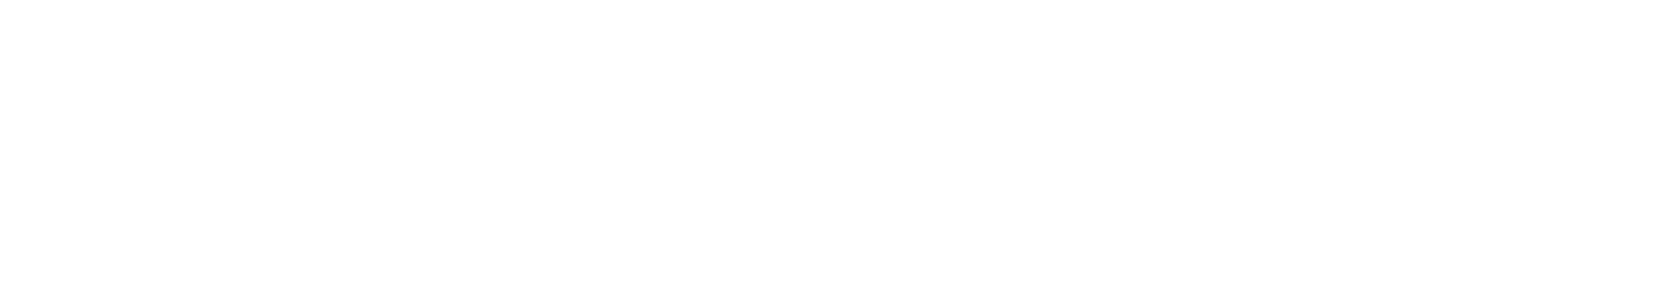 логотип комплекса Дикие белки